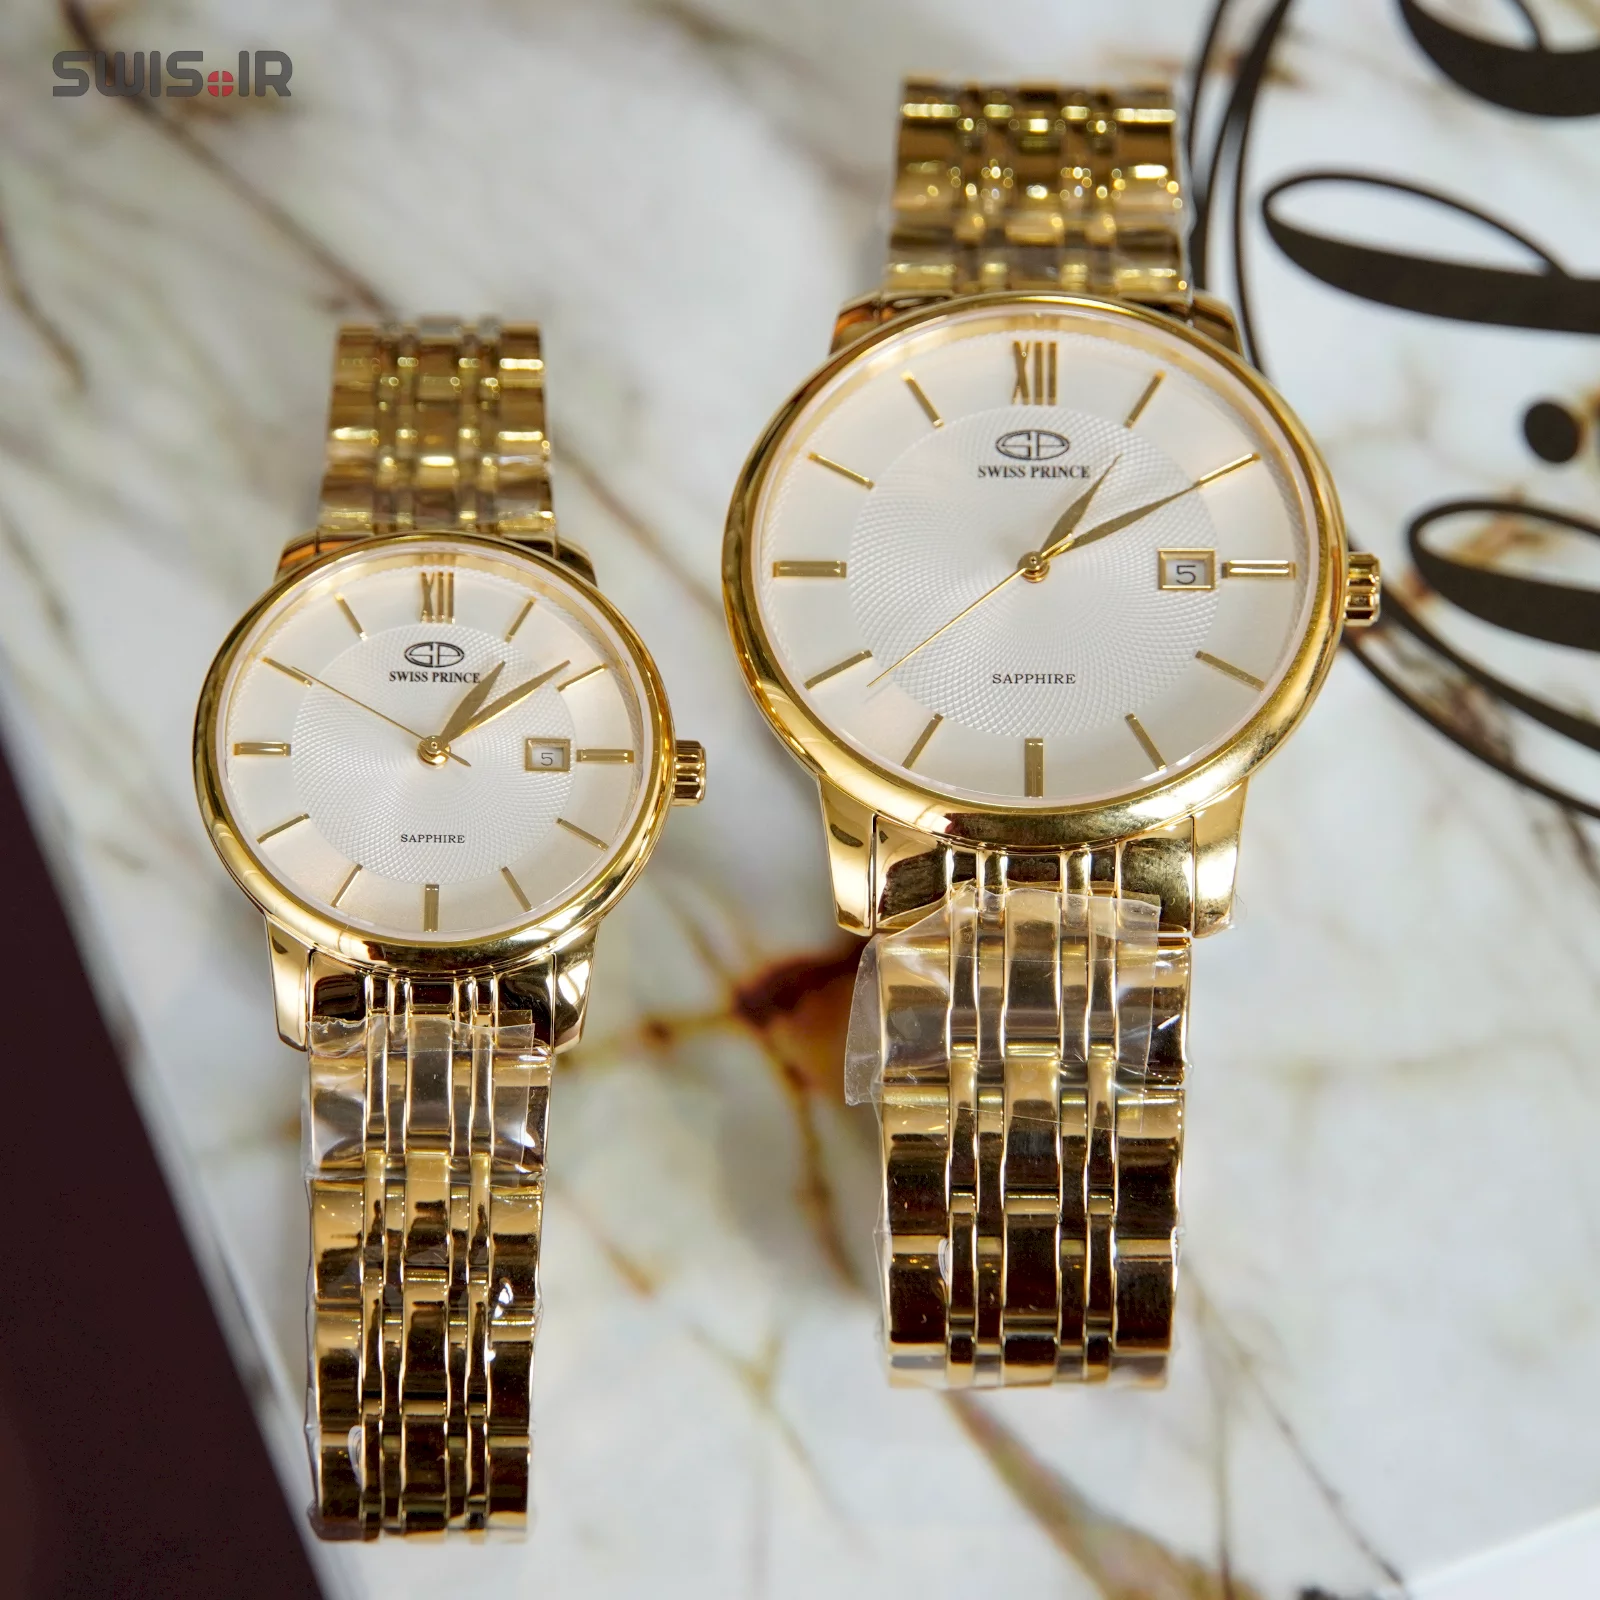 ست مردانه ـ زنانه ساعت مچی برند سوئیس پرینس مدل Gold-816-M